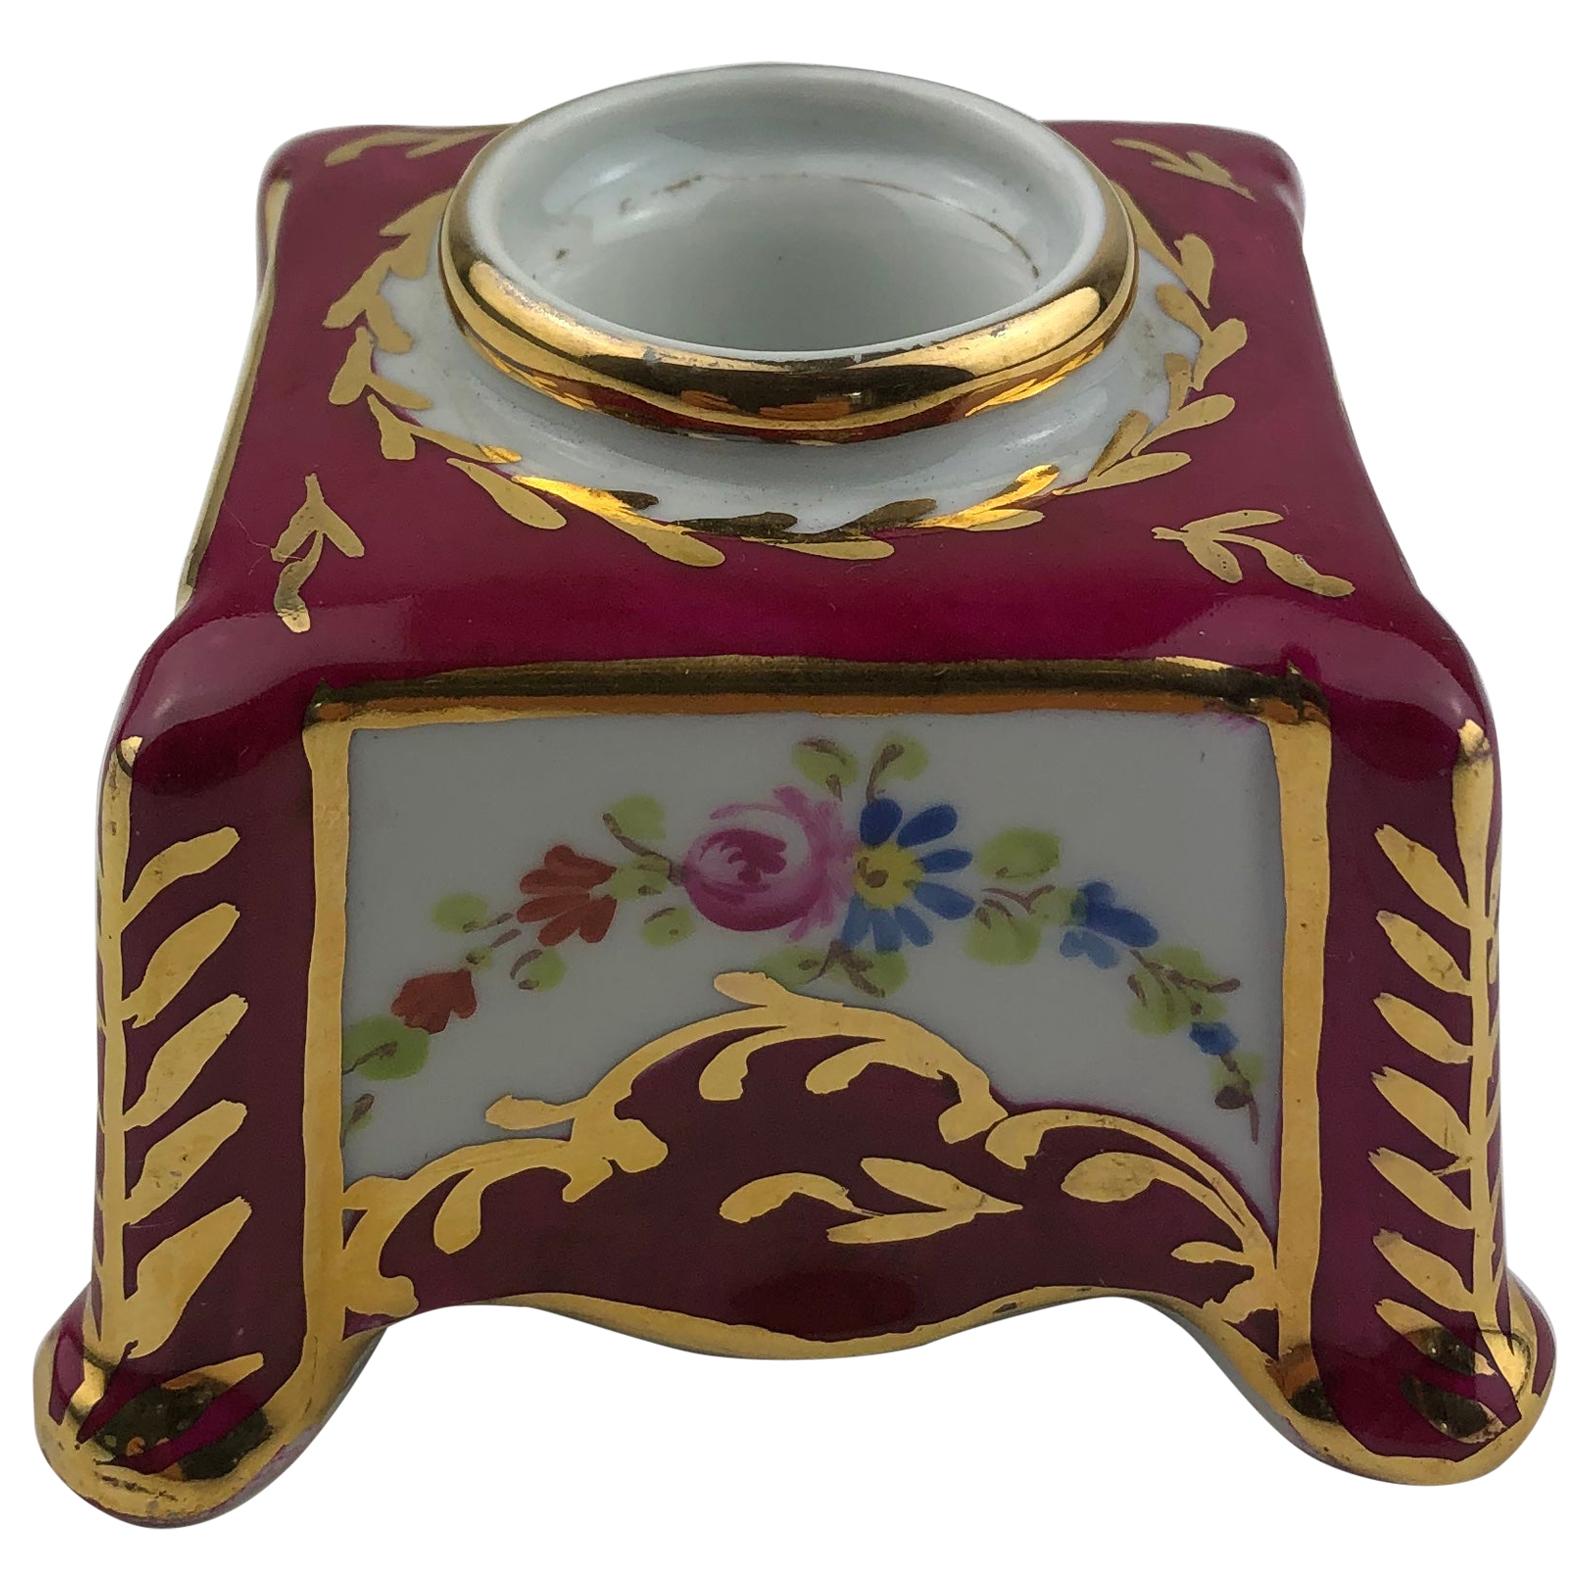 Chandelier en porcelaine de Limoges peint à la main et orné d'or